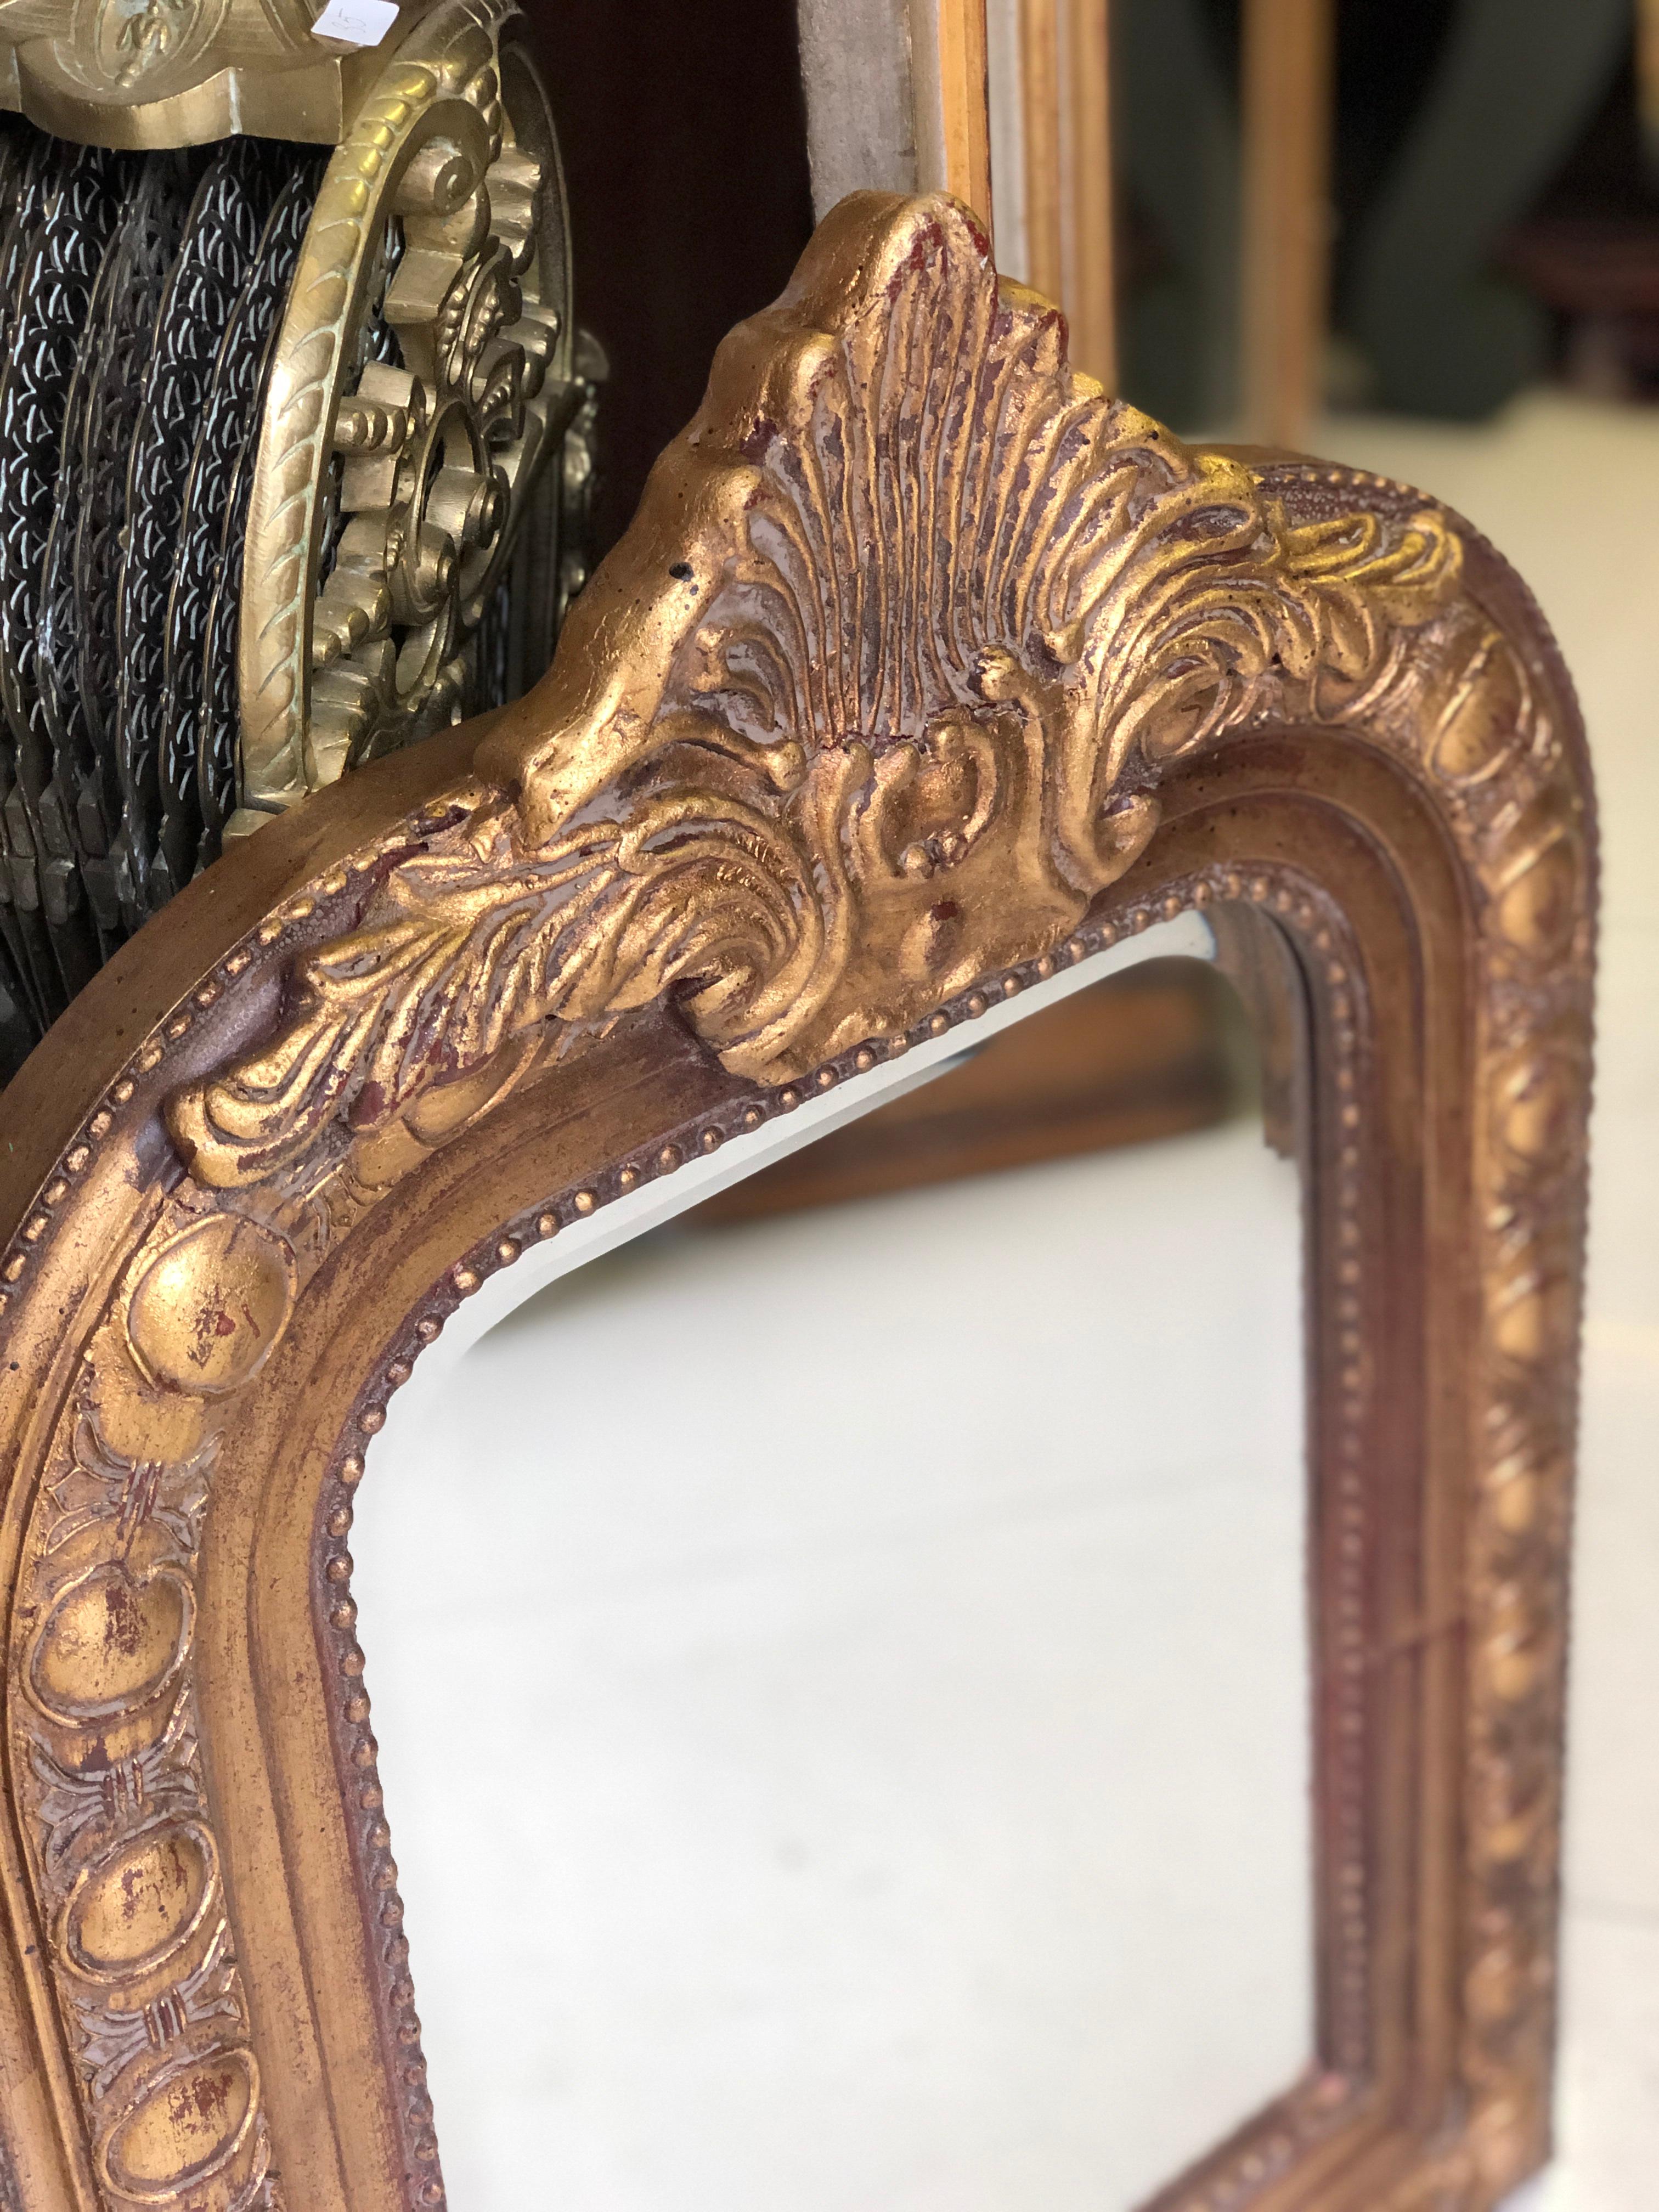 Sehr massives und interessantes Modell eines handgeschnitzten Spiegels aus Vergoldungsholz mit originalem Kristallglas. Sehr guter Zustand.
Frankreich, um 1900.